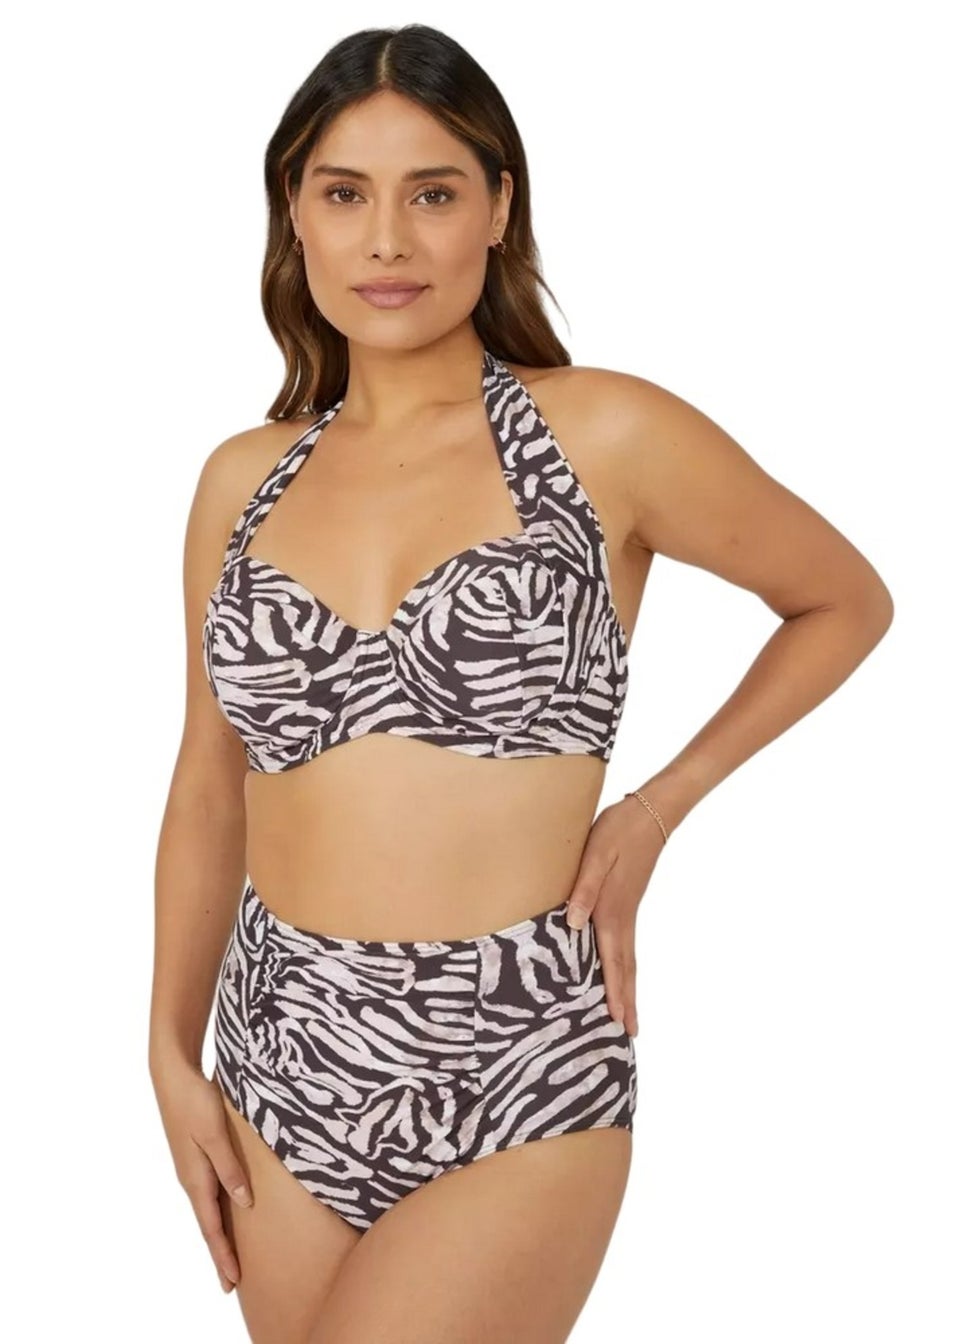 Gorgeous Black/White Zebra Print High Waist Bikini Bottoms